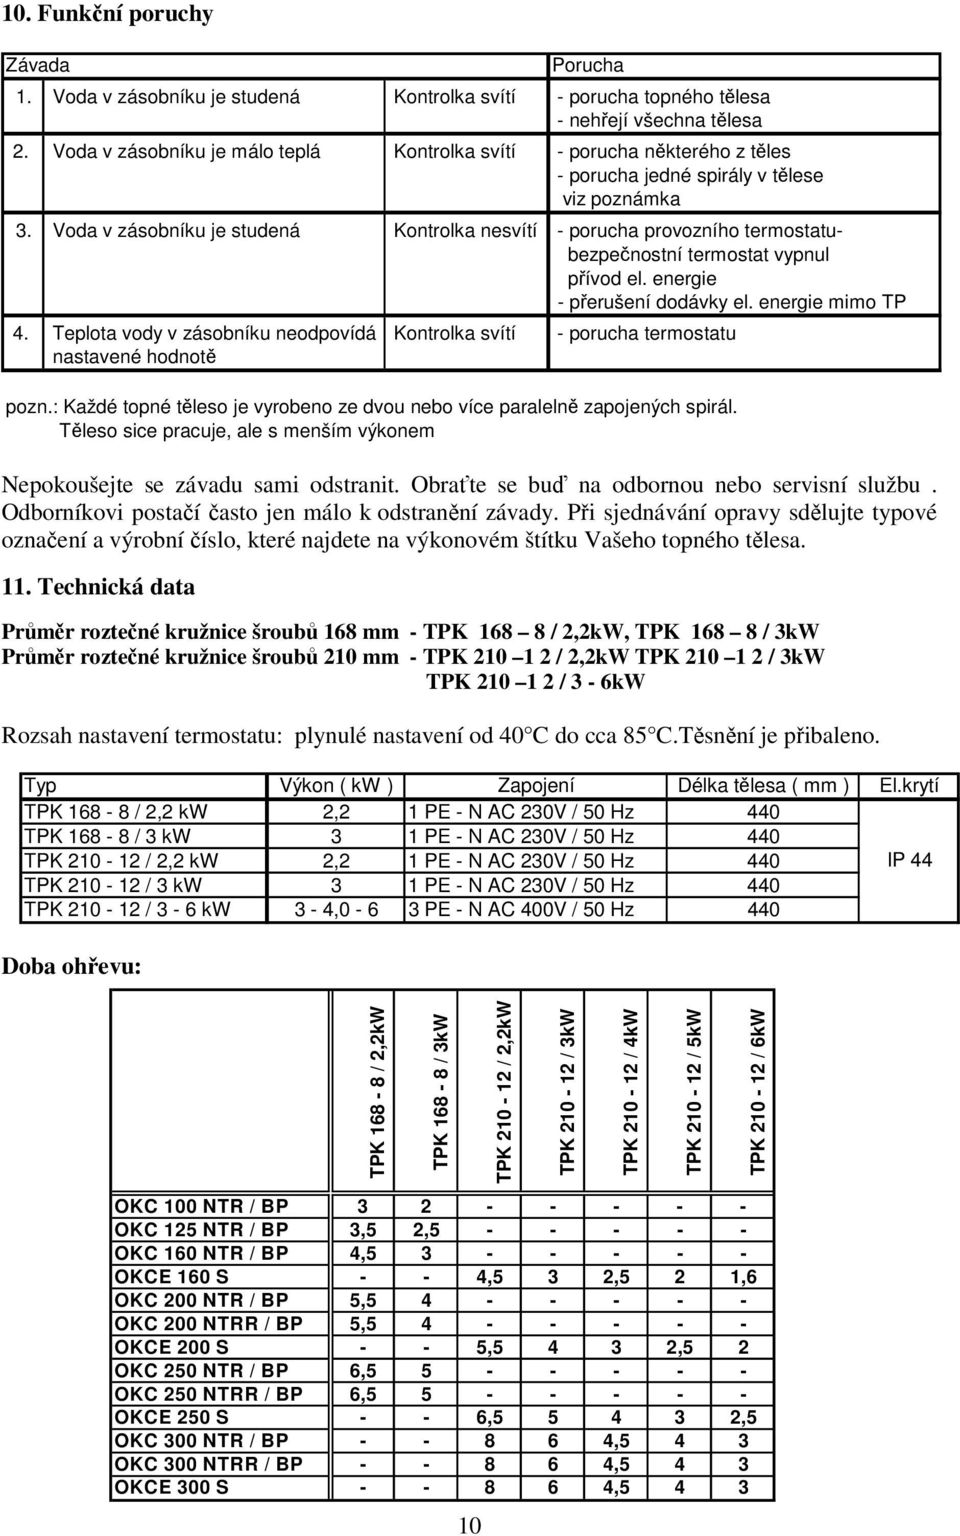 Technická data Průměr roztečné kružnice šroubů 168 mm - TPK 168 8 / 2,2kW, TPK 168 8 / 3kW Průměr roztečné kružnice šroubů 210 mm - TPK 210 1 2 / 2,2kW TPK 210 1 2 / 3kW TPK 210 1 2 / 3-6kW Rozsah